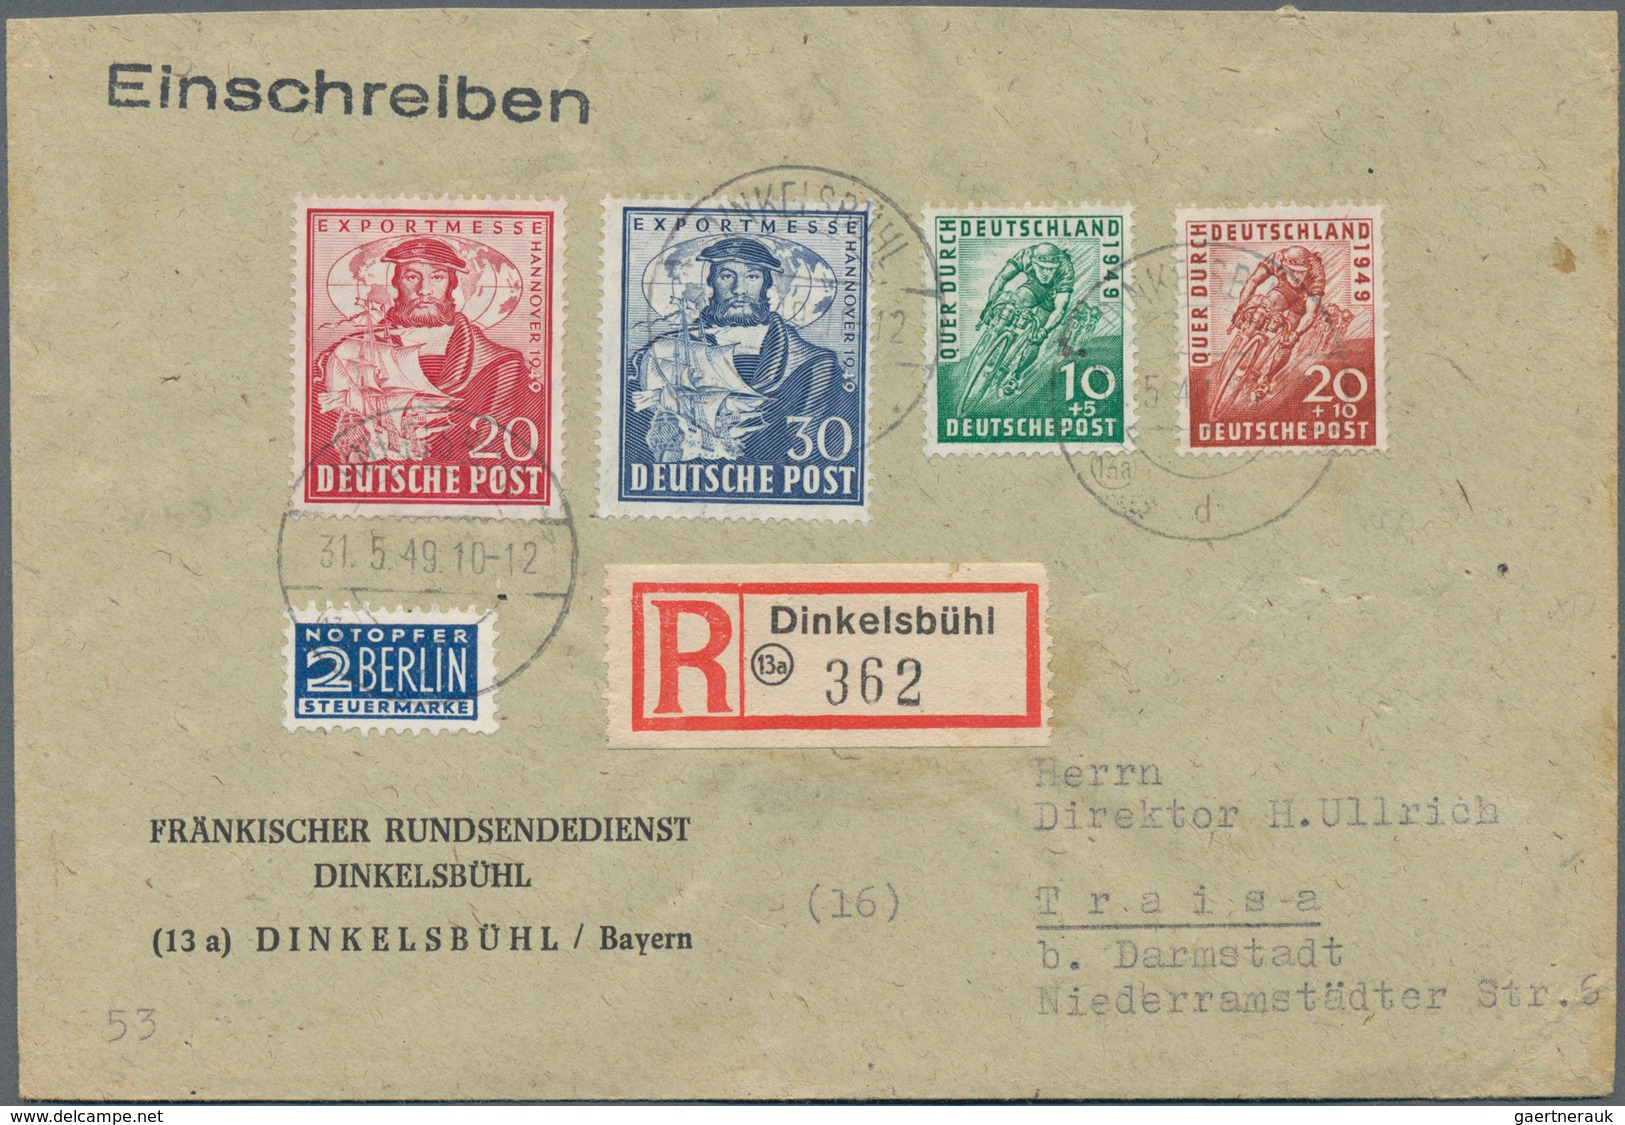 Deutschland nach 1945: 1945/1970 (ca.), rd. 560 Belege mit etwas Zonen, Bundesrepublik (hier gute Fr